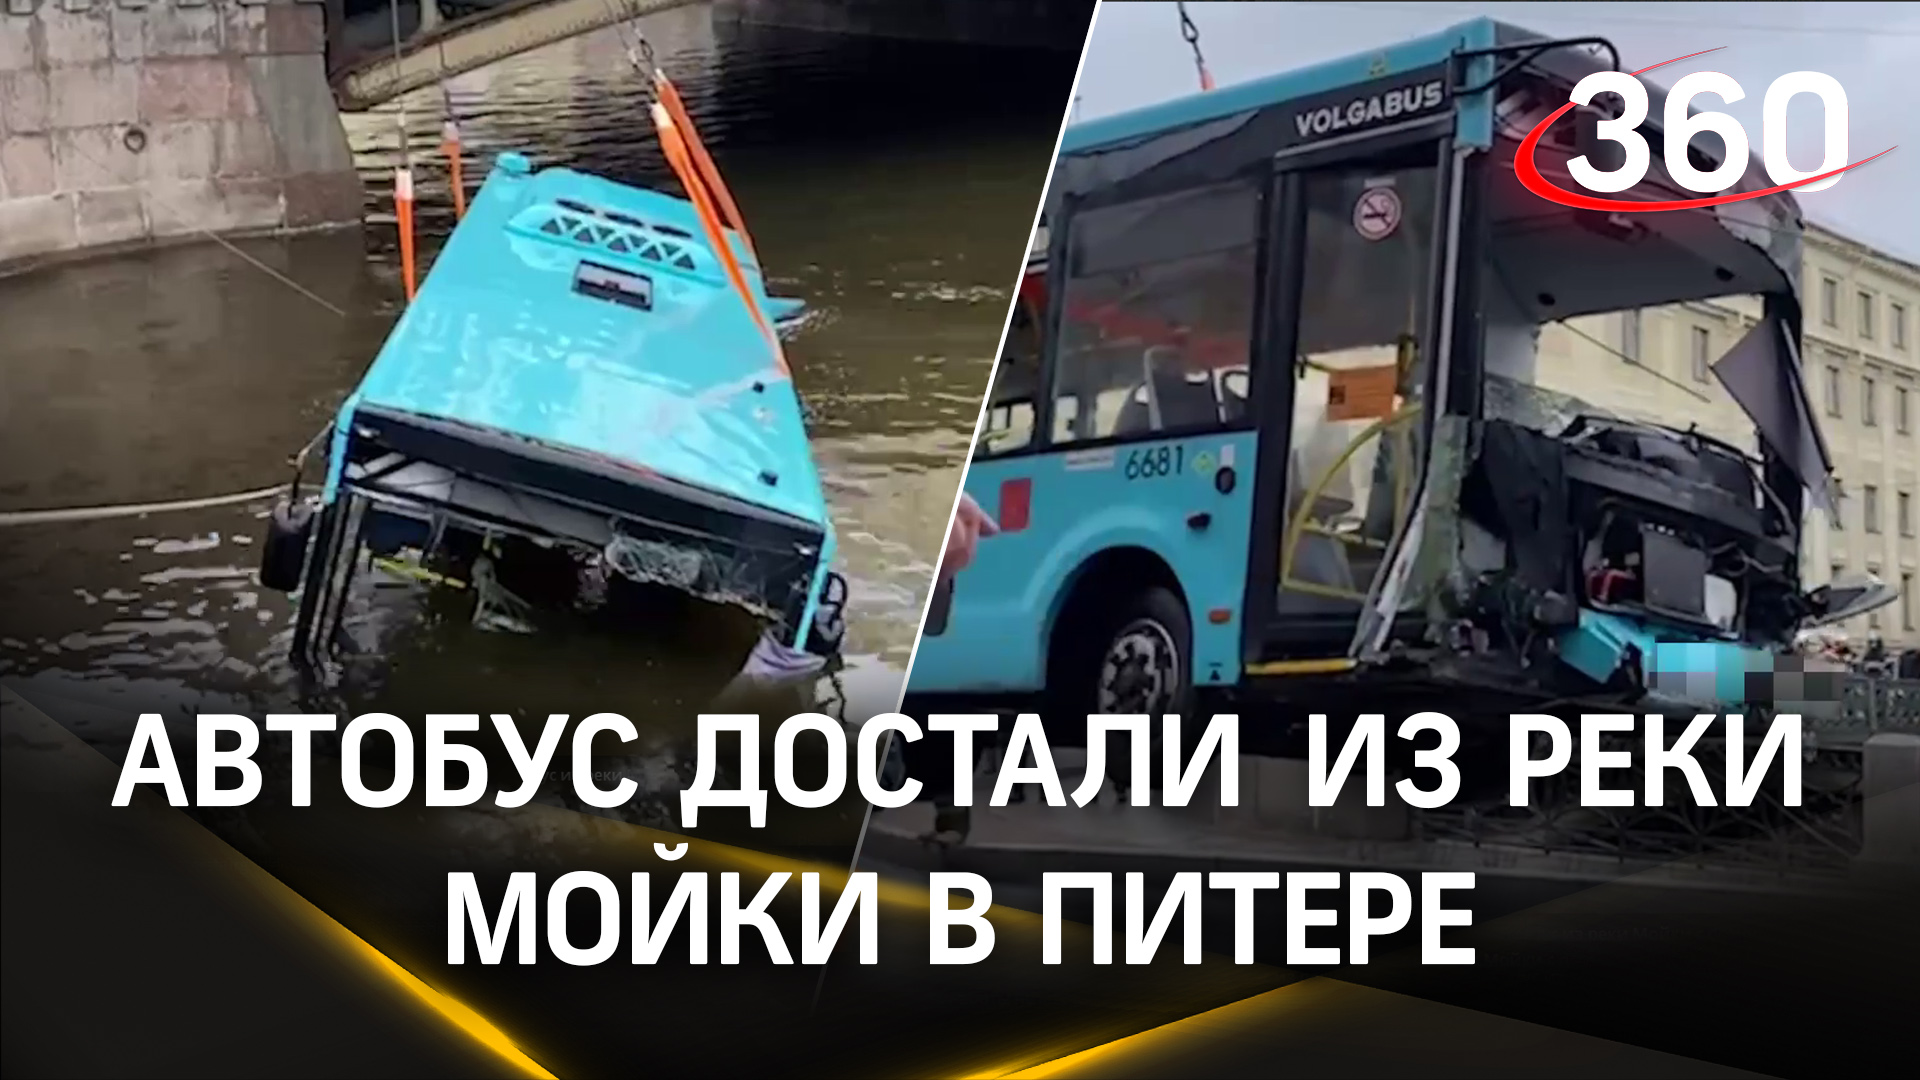 Специалисты МЧС извлекли автобус, рухнувший в реку Мойку с Поцелуева моста в Санкт-Петербурге